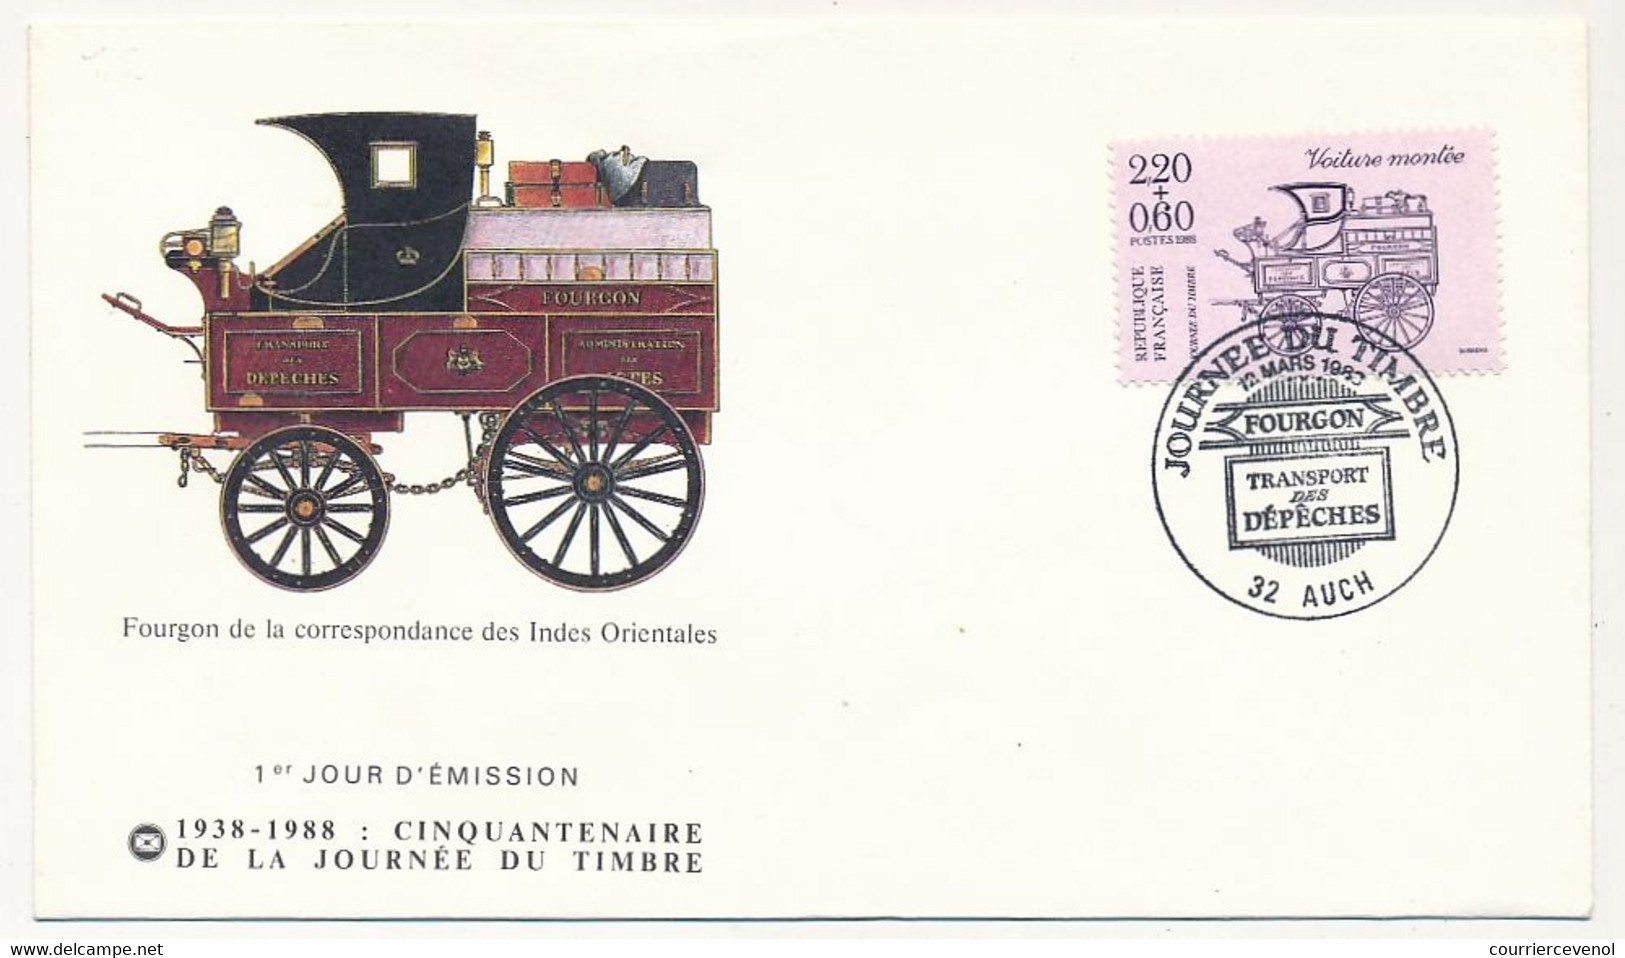 FRANCE - Enveloppe FDC - Journée Du Timbre 1988 - 2,20 + 0,60 Fourgon... - 32 AUCH - 15 Avril 1989 - 1980-1989